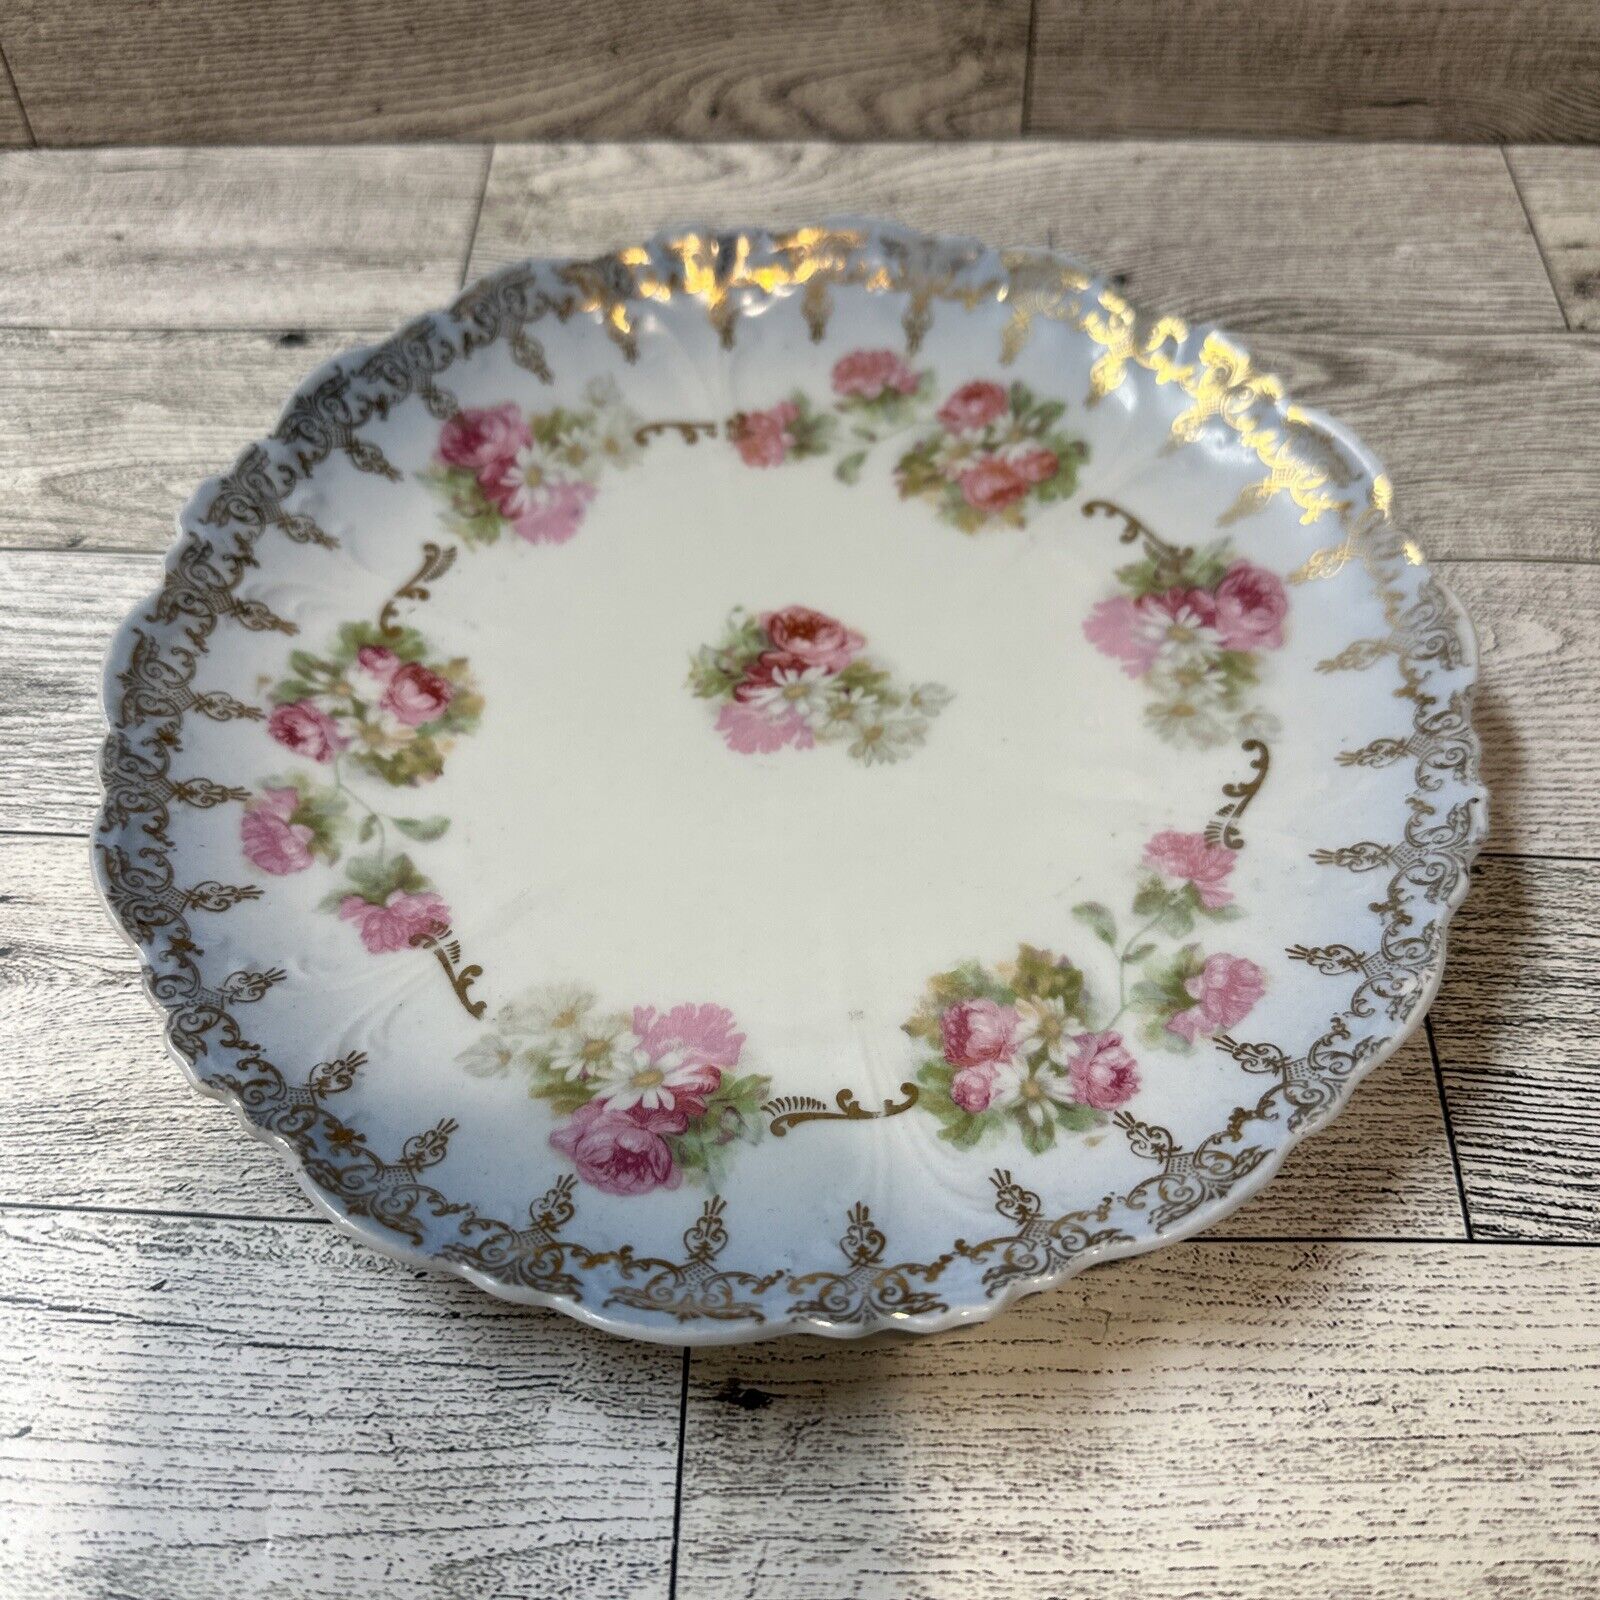 ELBOGEN Austria Floral 7.5” Salad Dessert Plate Vintage Pink Roses Gold Design